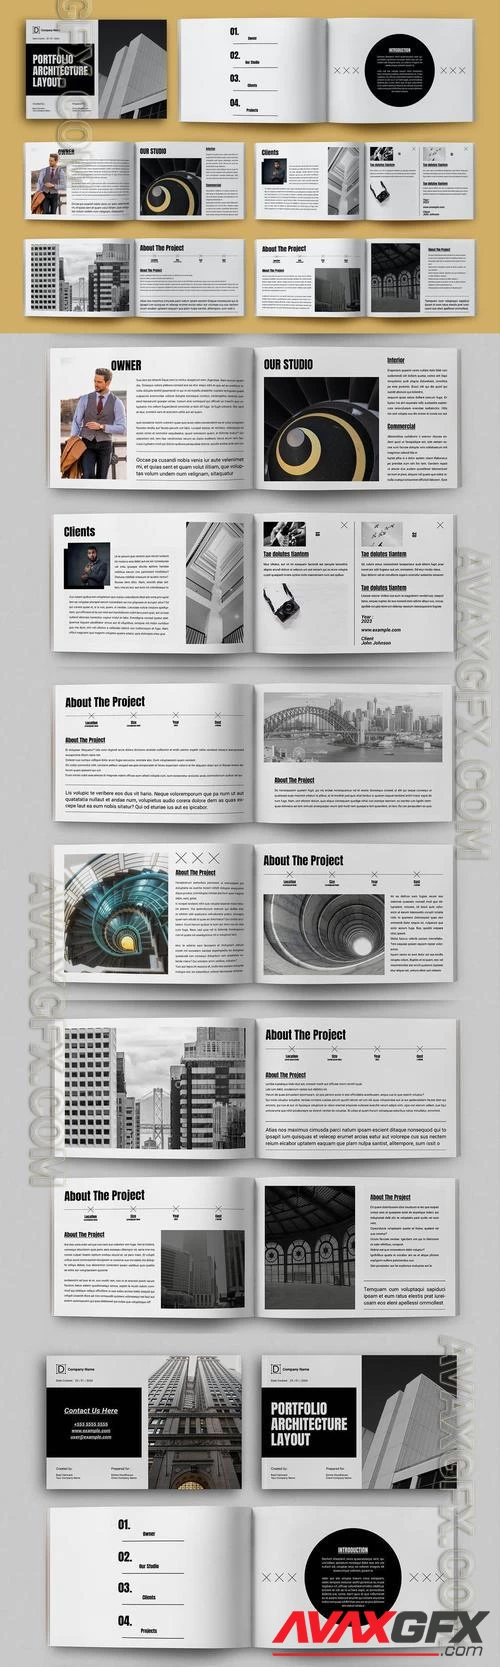 Architecture Portfolio Magazine Design